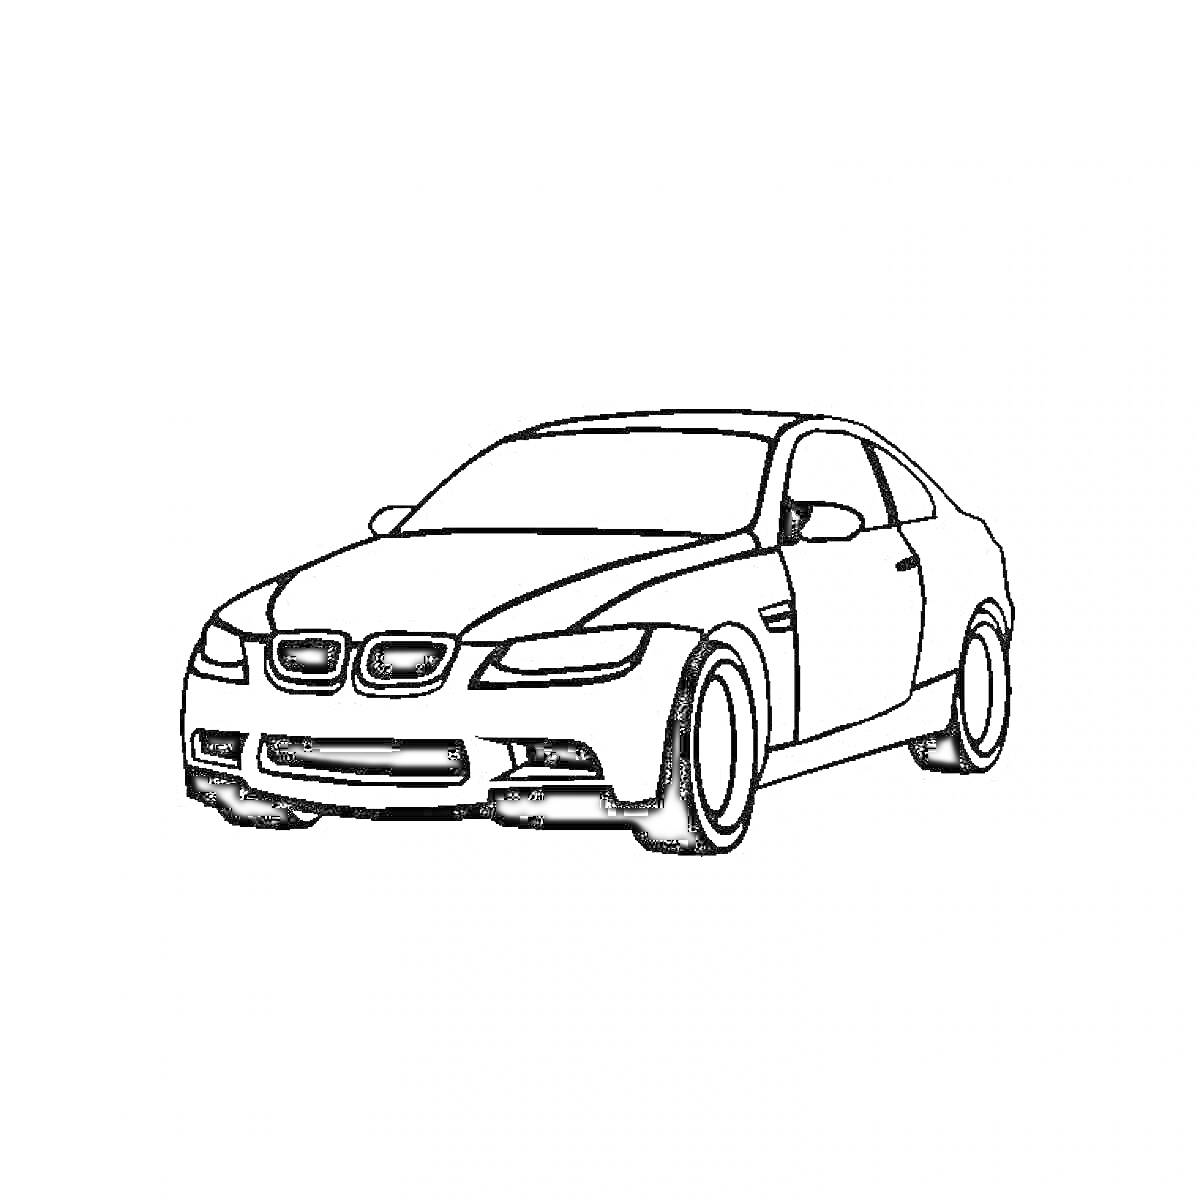 Раскраска Контур автомобиля BMW с проработанными деталями кузова